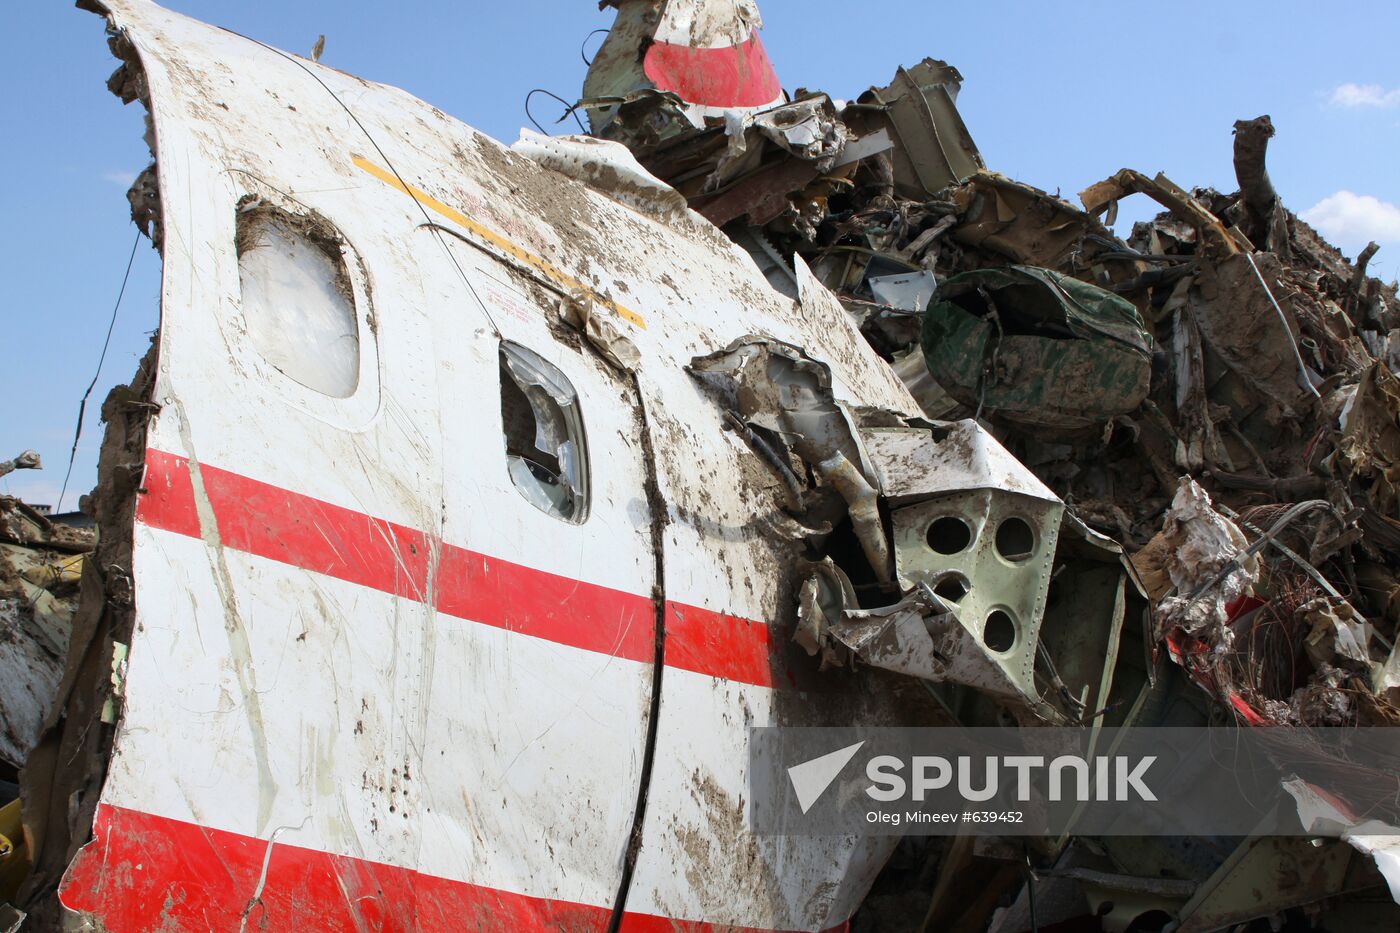 Lech Kaczyński's Tu-154 aircraft debris at Smolensk airfield